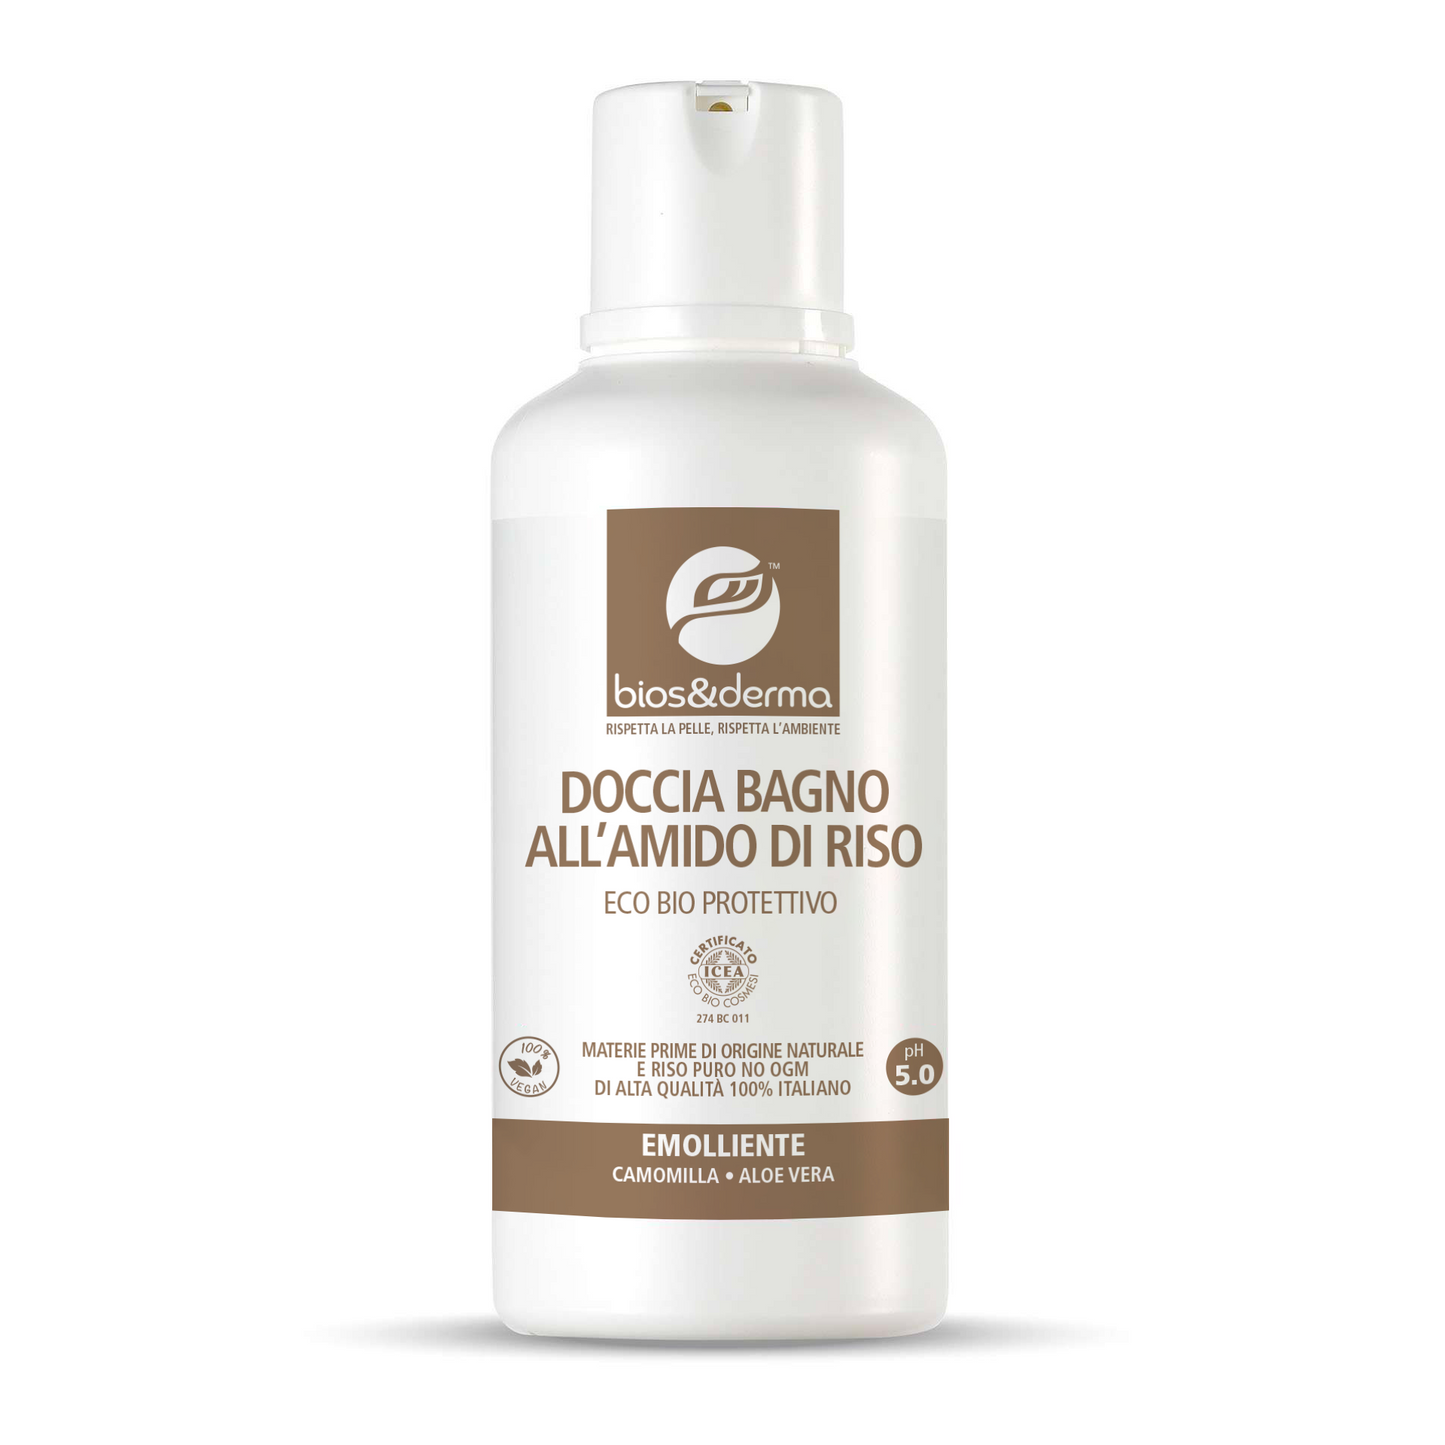 DOCCIA BAGNO ALL’AMIDO DI RISO PURO (500ml) - Bios&Derma